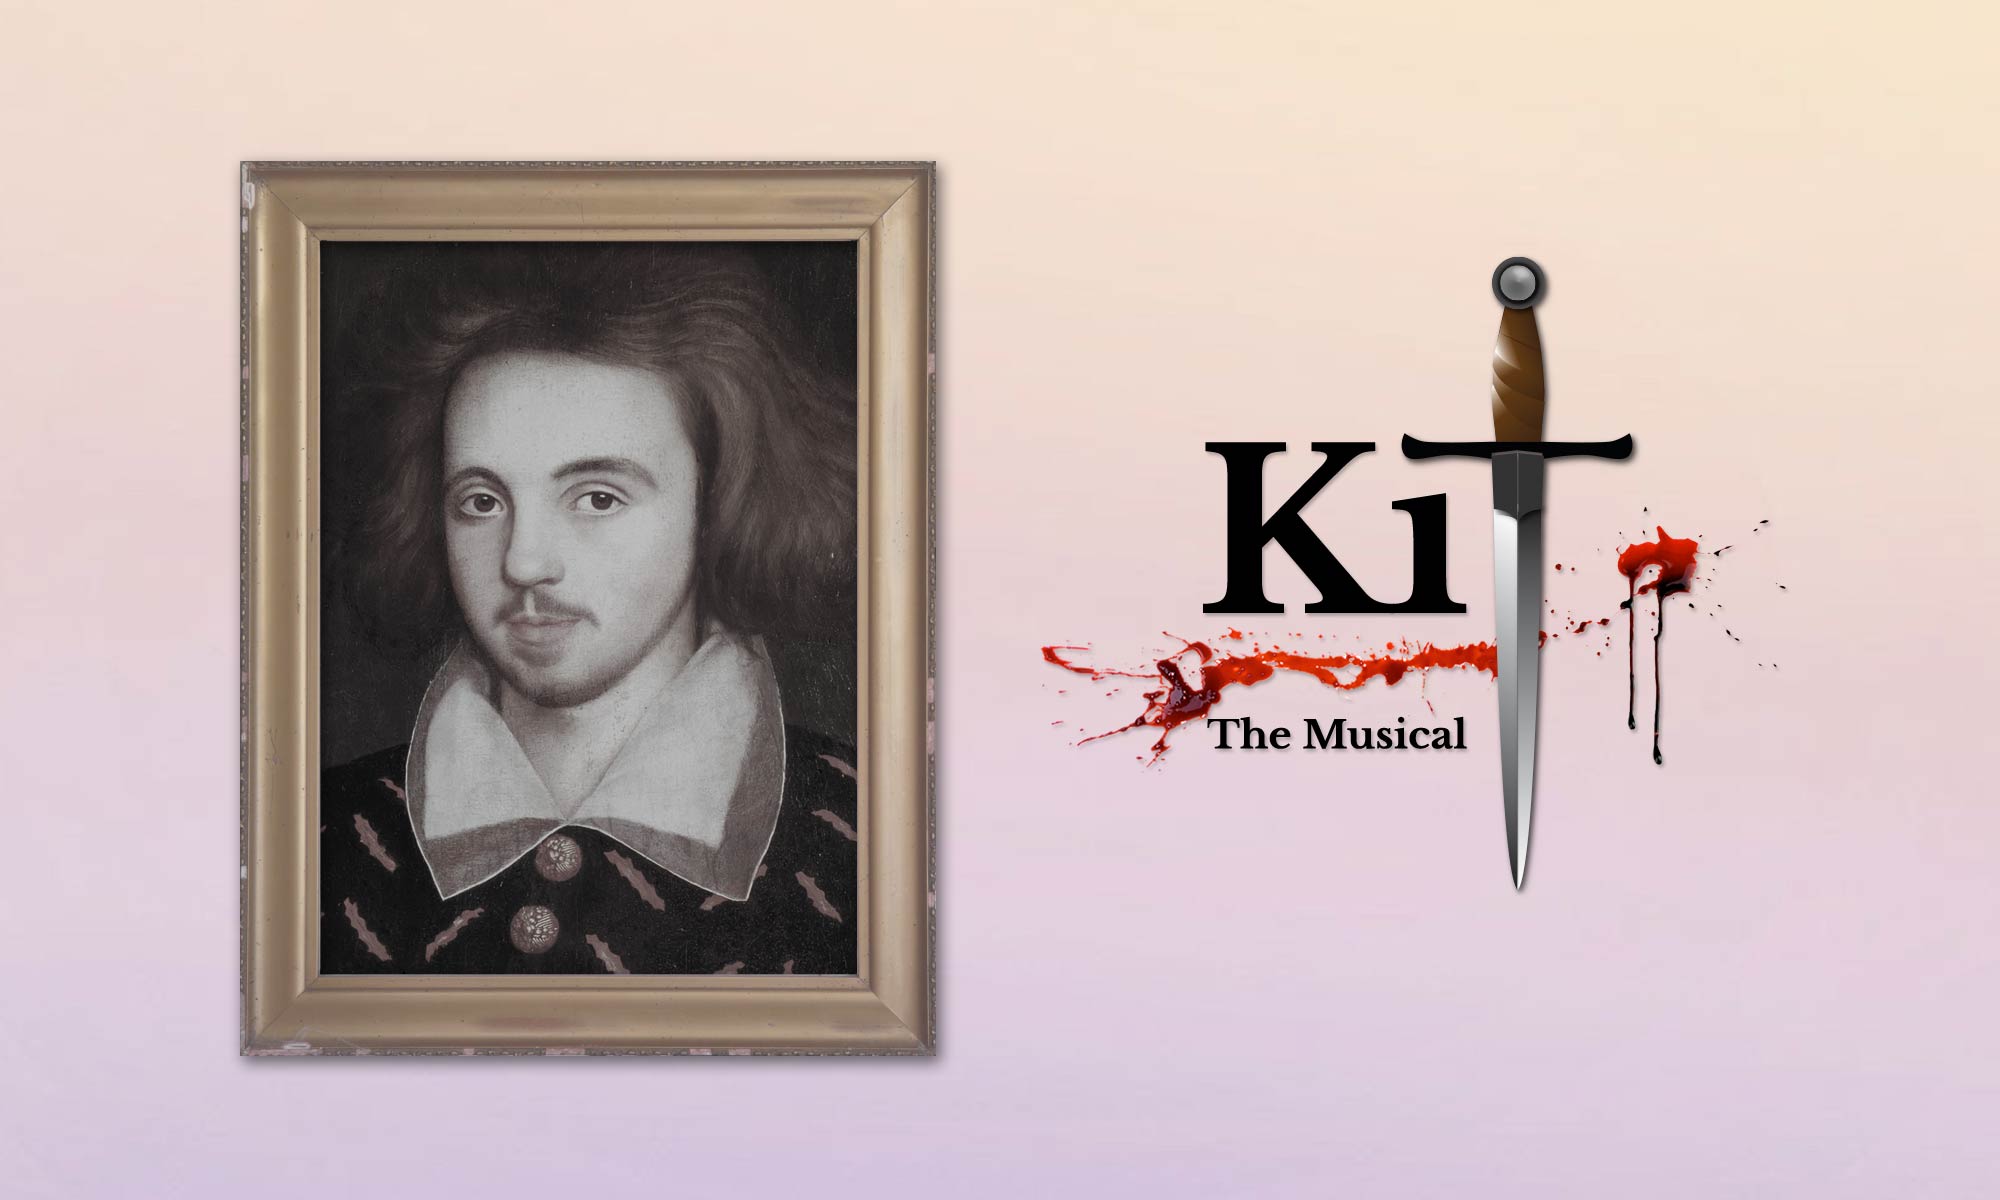 Kit the Musical by Julian Ng